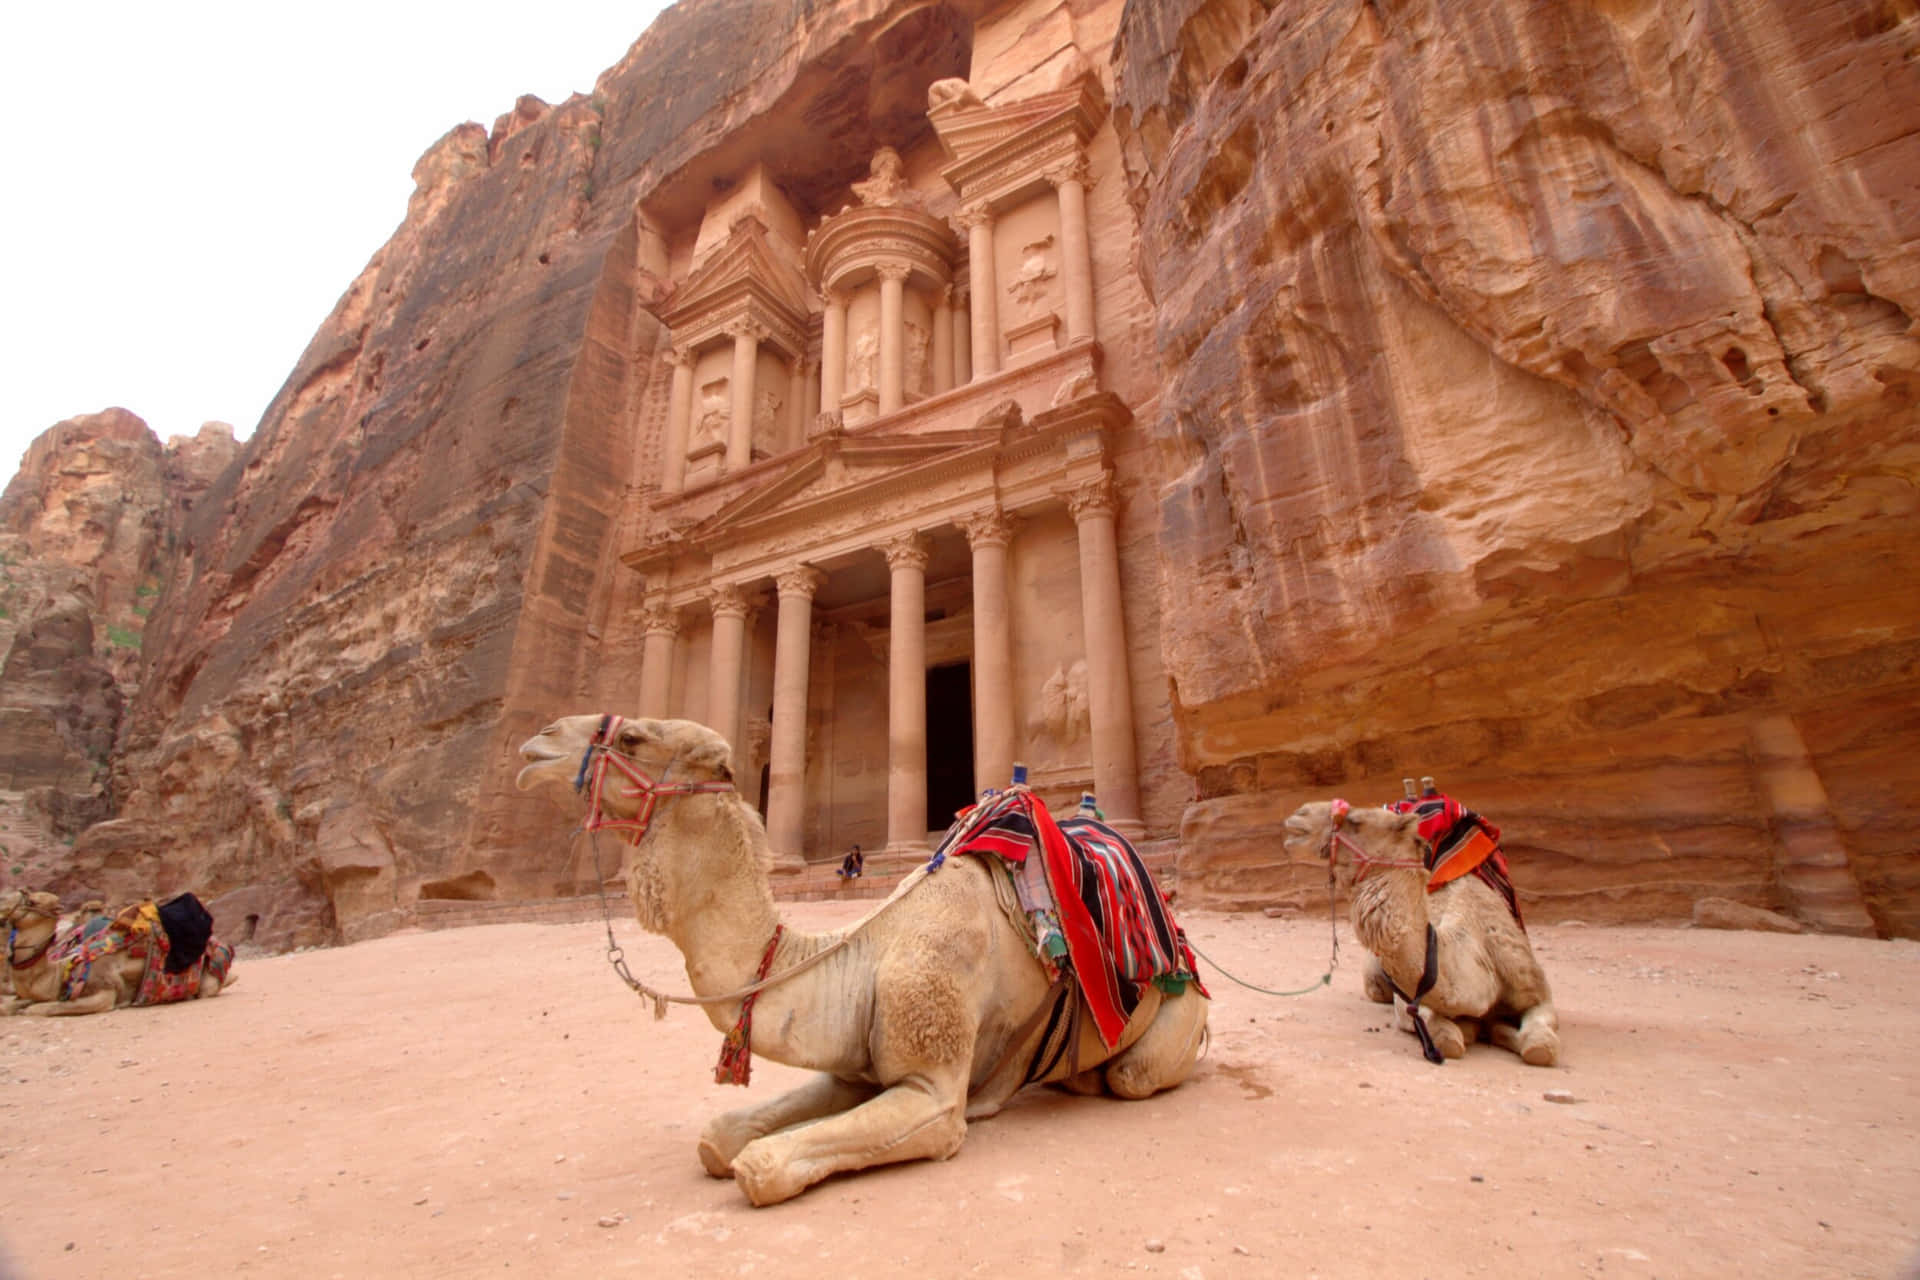 Kameler i arkæologiske sted Petra genspecificeret Wallpaper